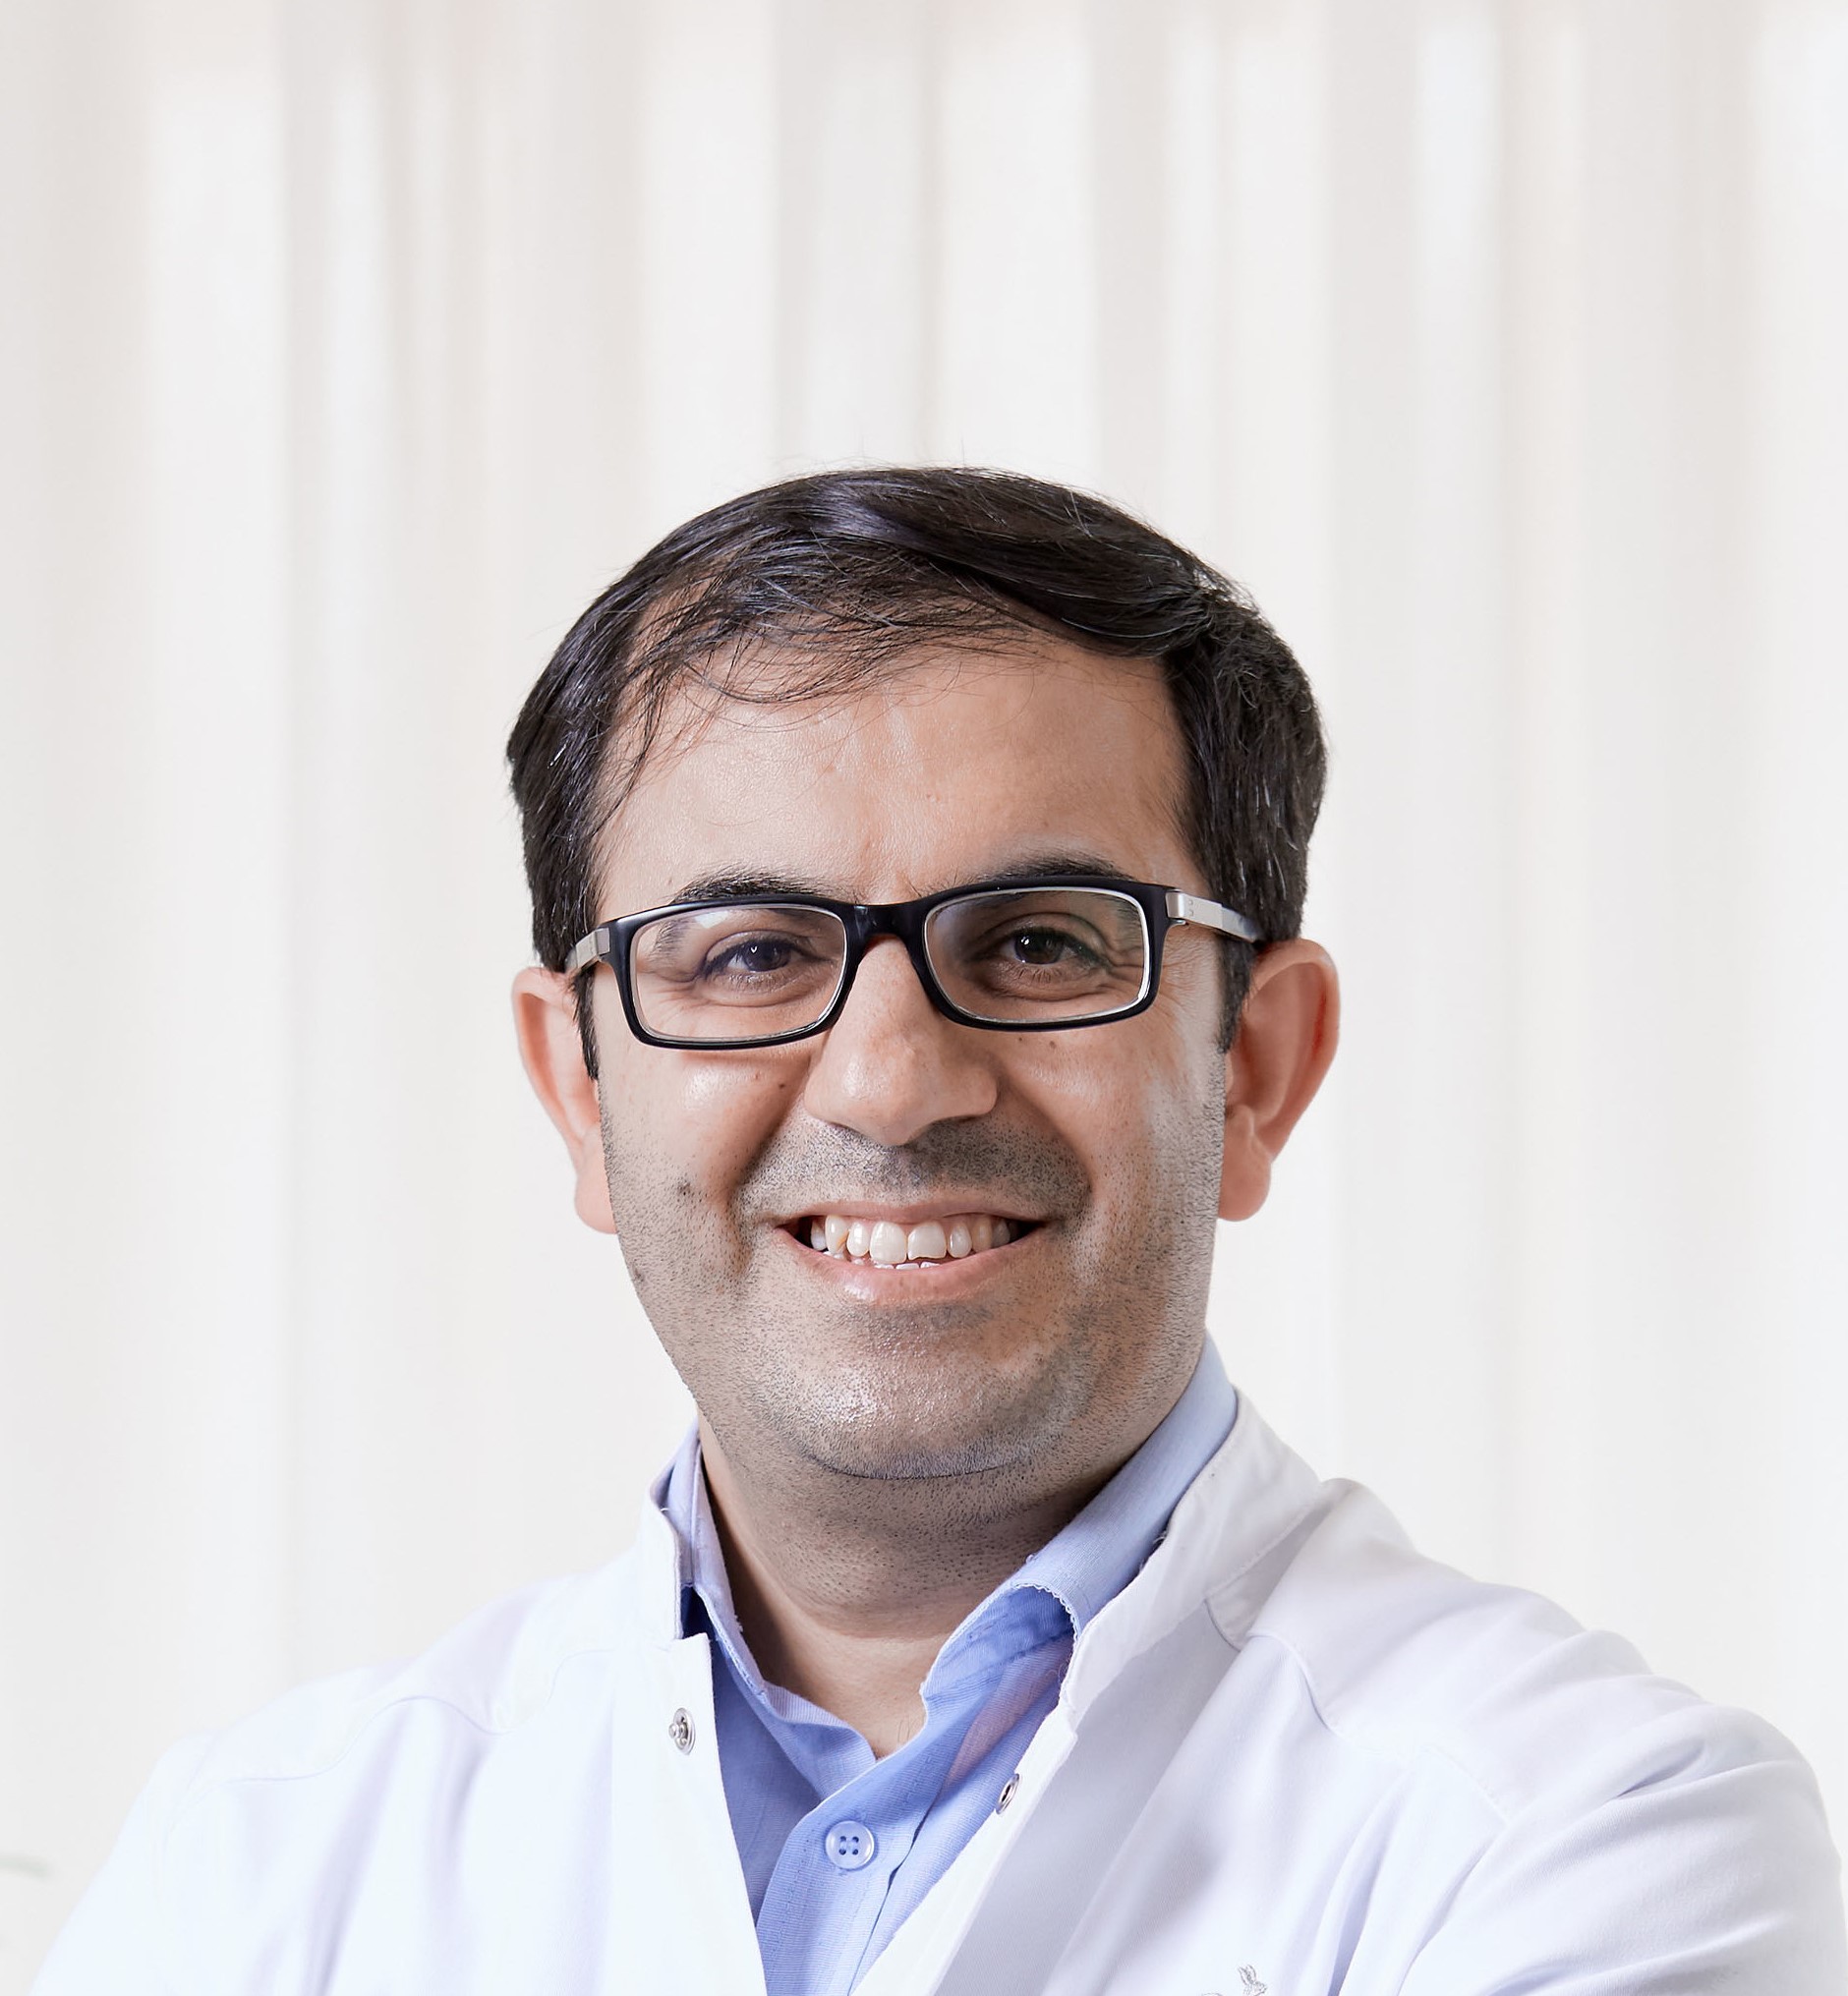 Dermatologist, PD Dr. Dr. med. Ahmad Jalili